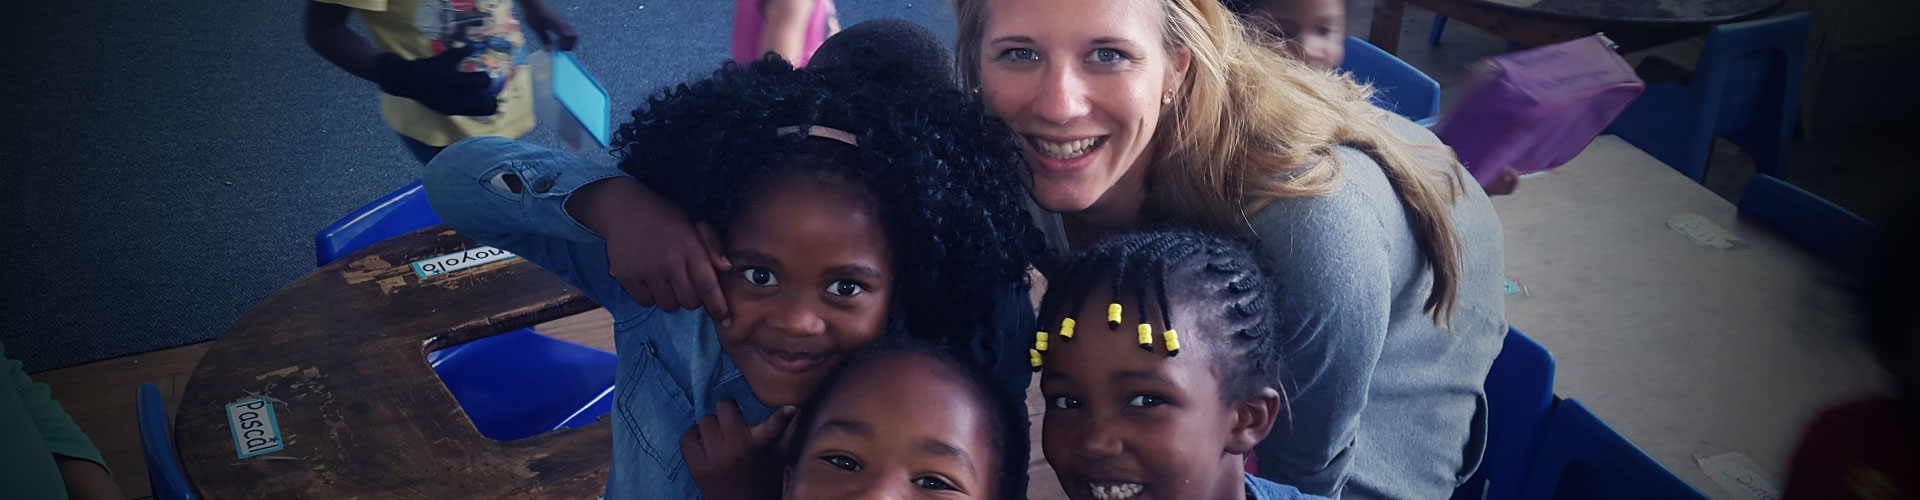 Volontario per l'assistenza all'infanzia e la previdenza sociale in Sud Africa